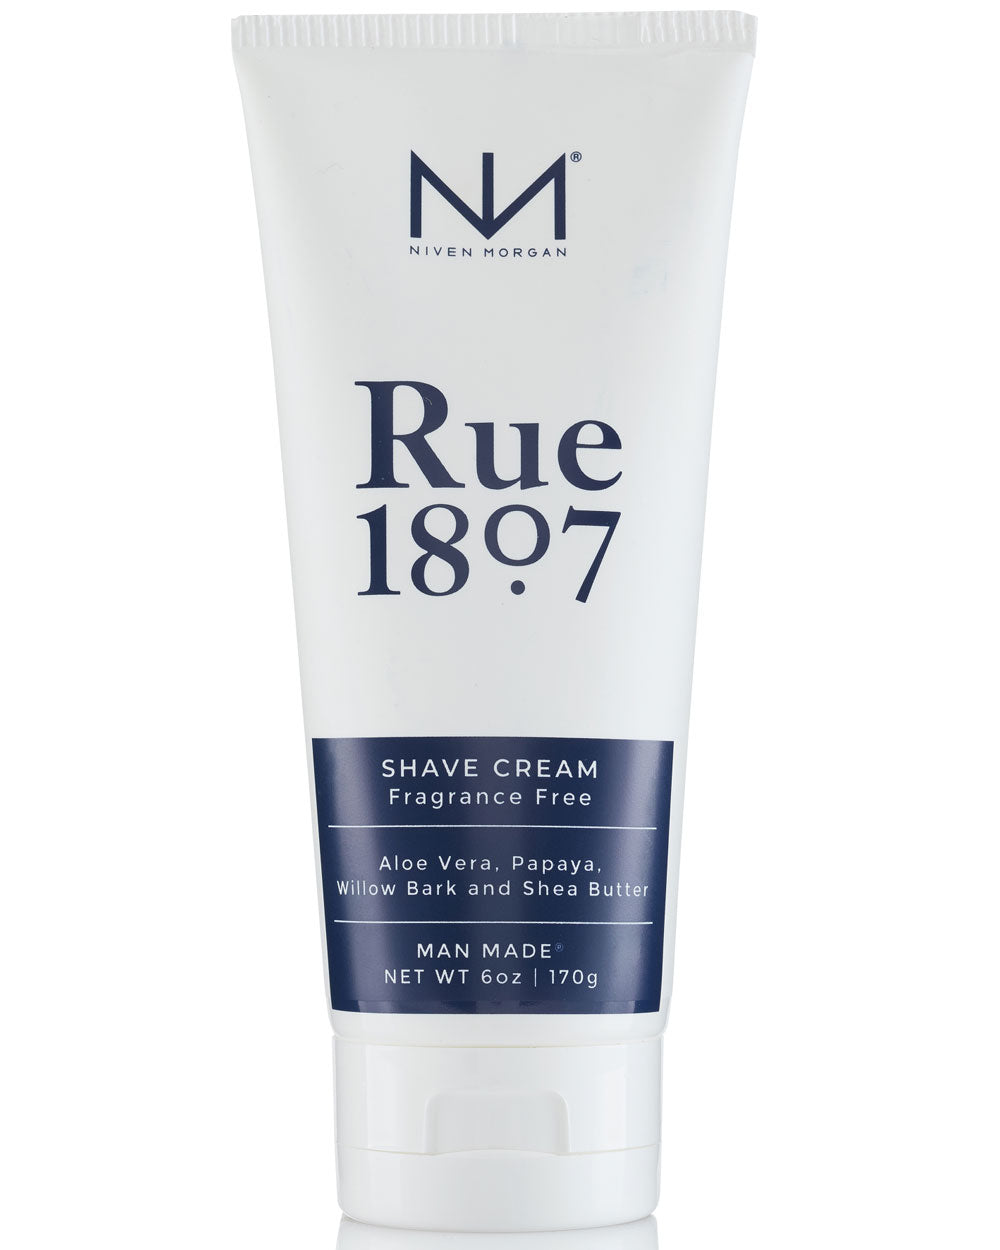 Rue 1807 Shave Cream 6 oz